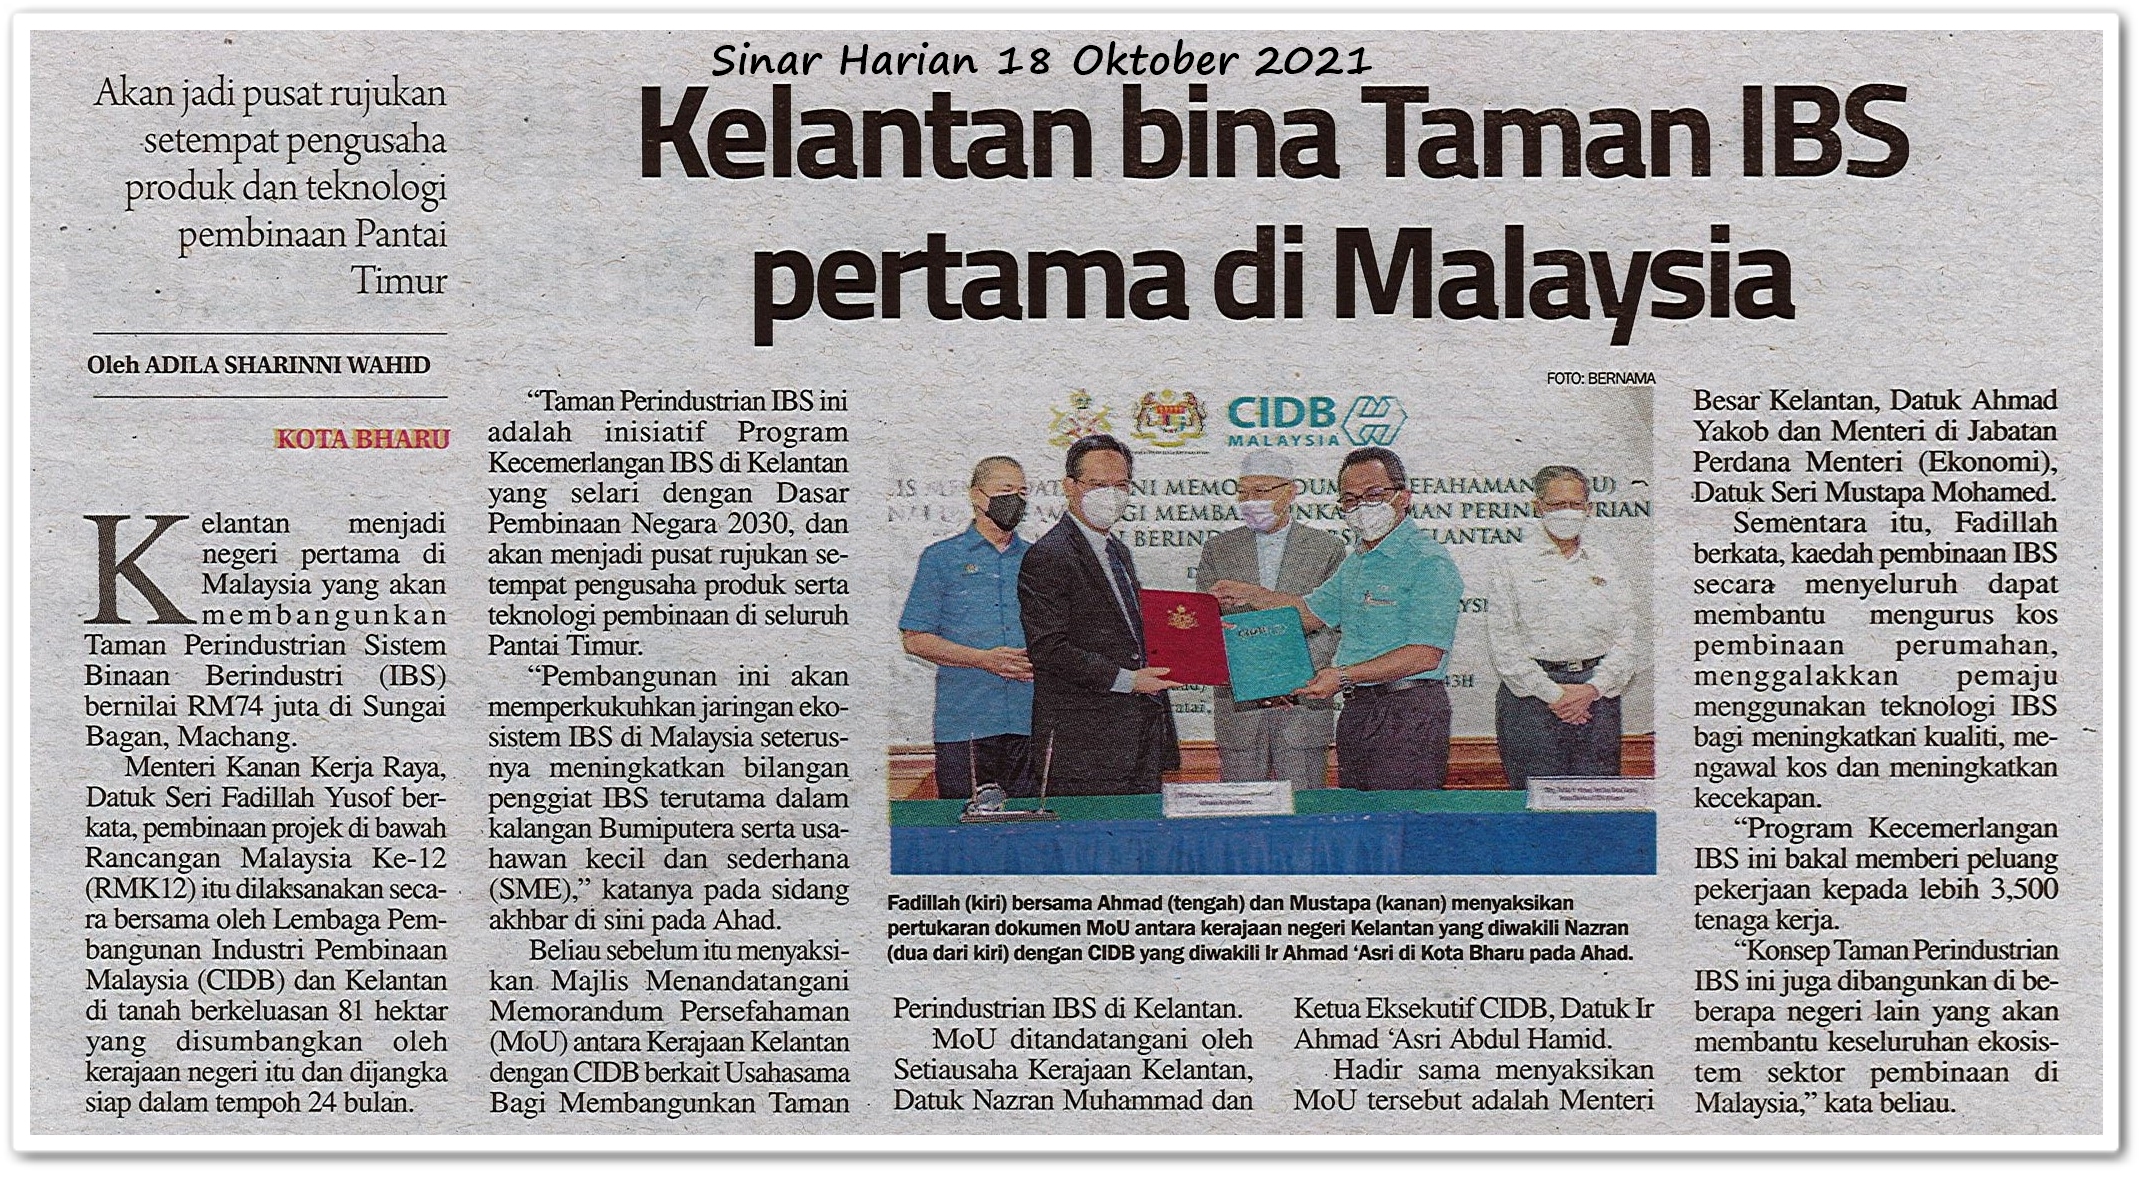 Kelantan bina Taman IBS pertama di Malaysia - Keratan akhbar Sinar Harian 18 Oktober 2021